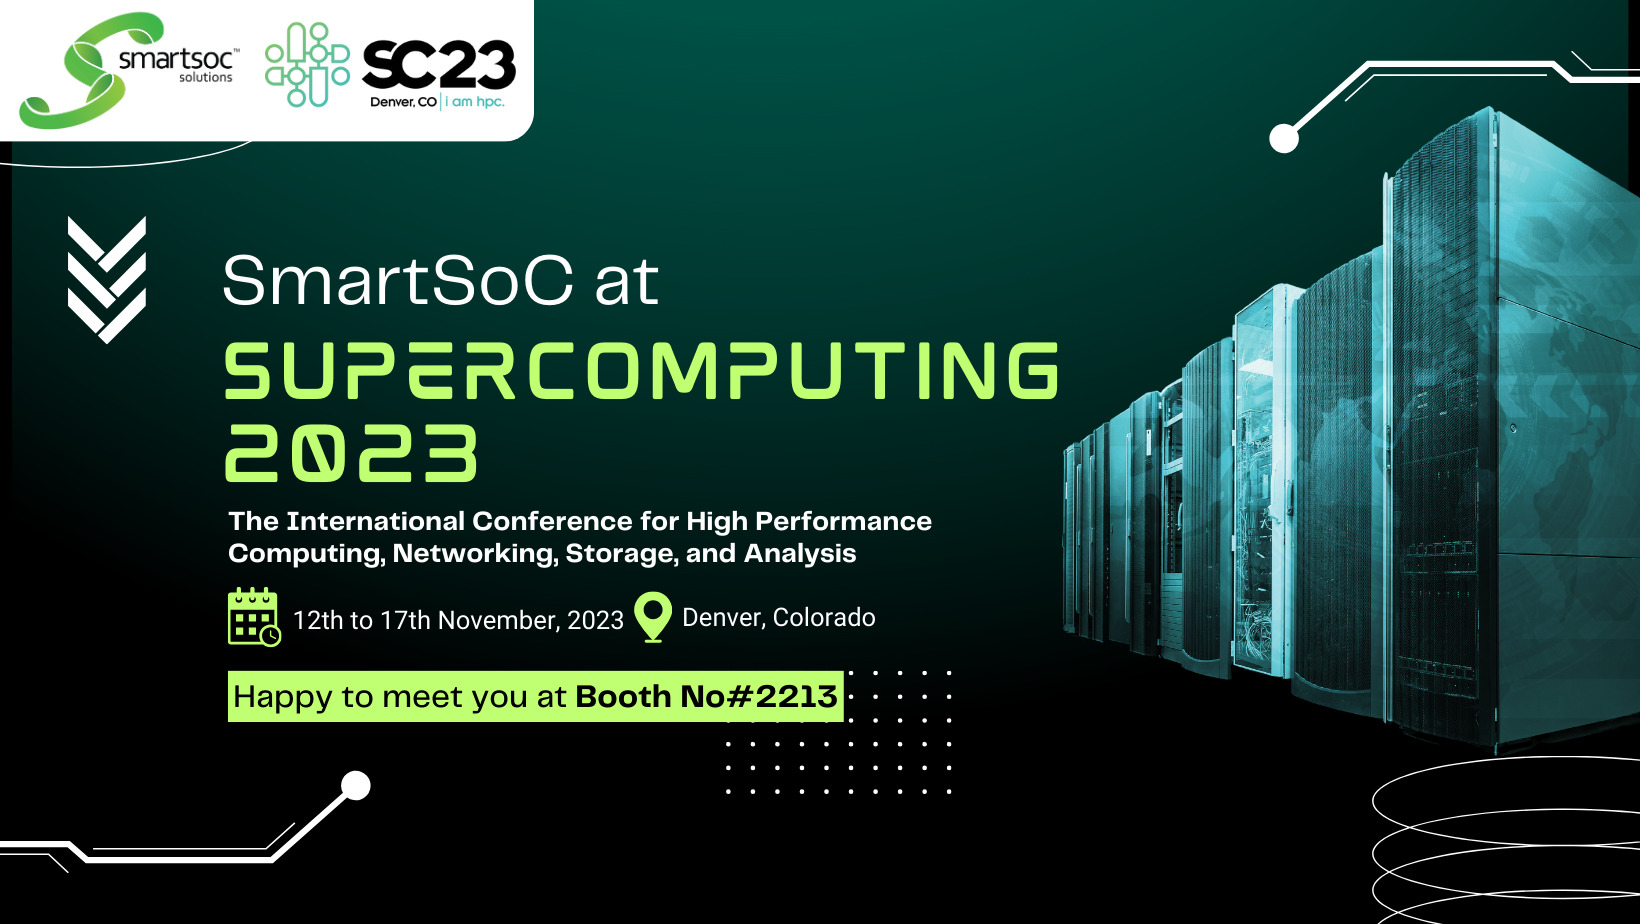 SmartSoC at SC23 Super Computing 2023